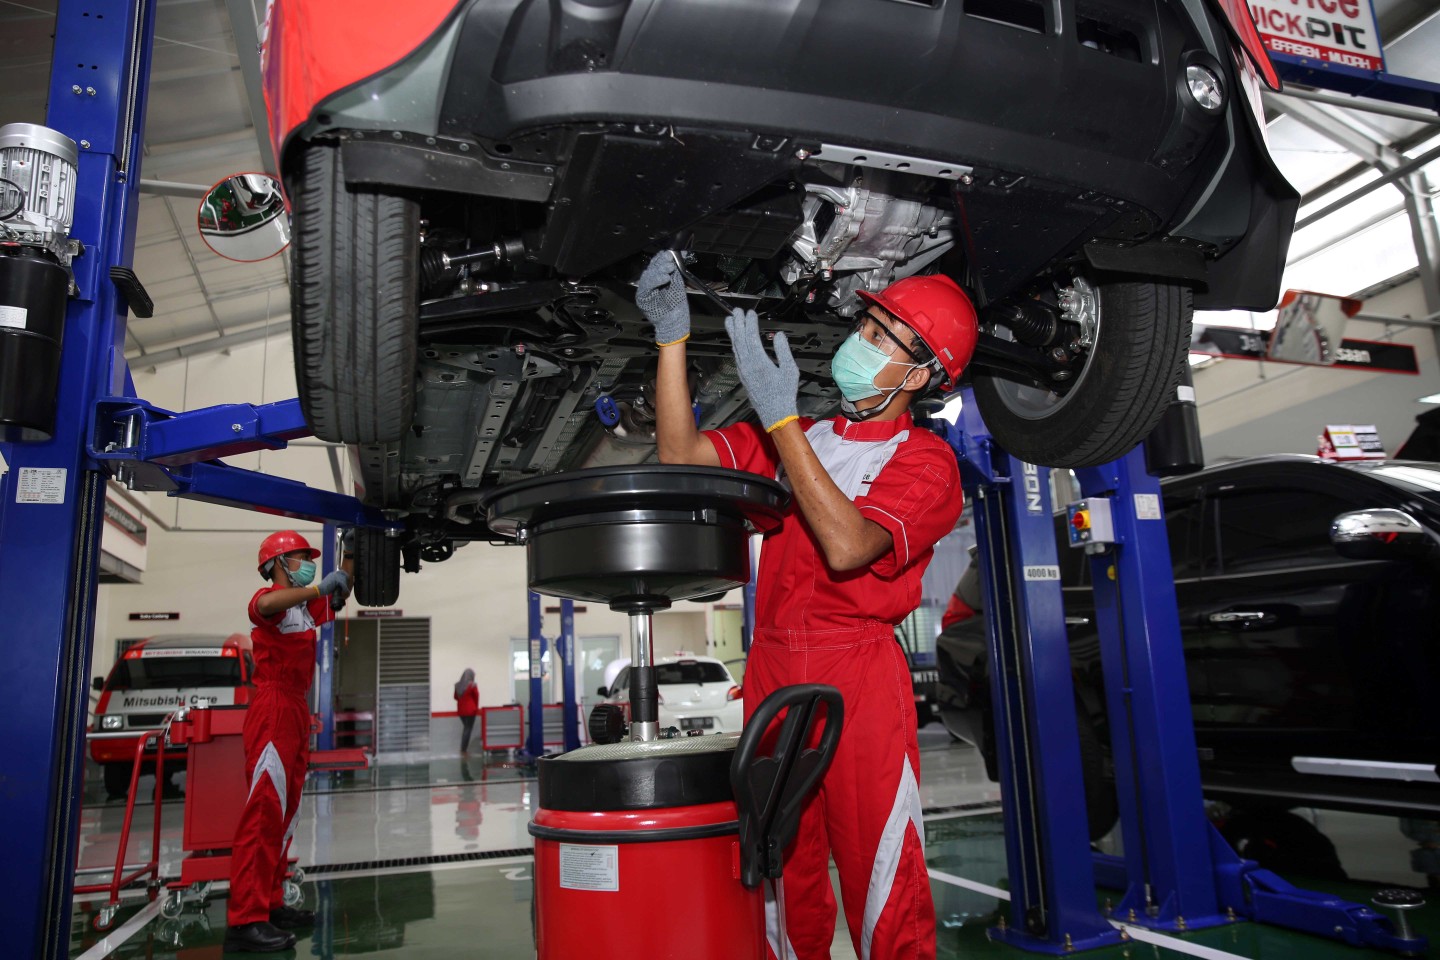 Manfaatkan Layanan Servis Gratis Pertama di Bengkel Resmi Mitsubishi agar Kondisi Kendaraan Prima